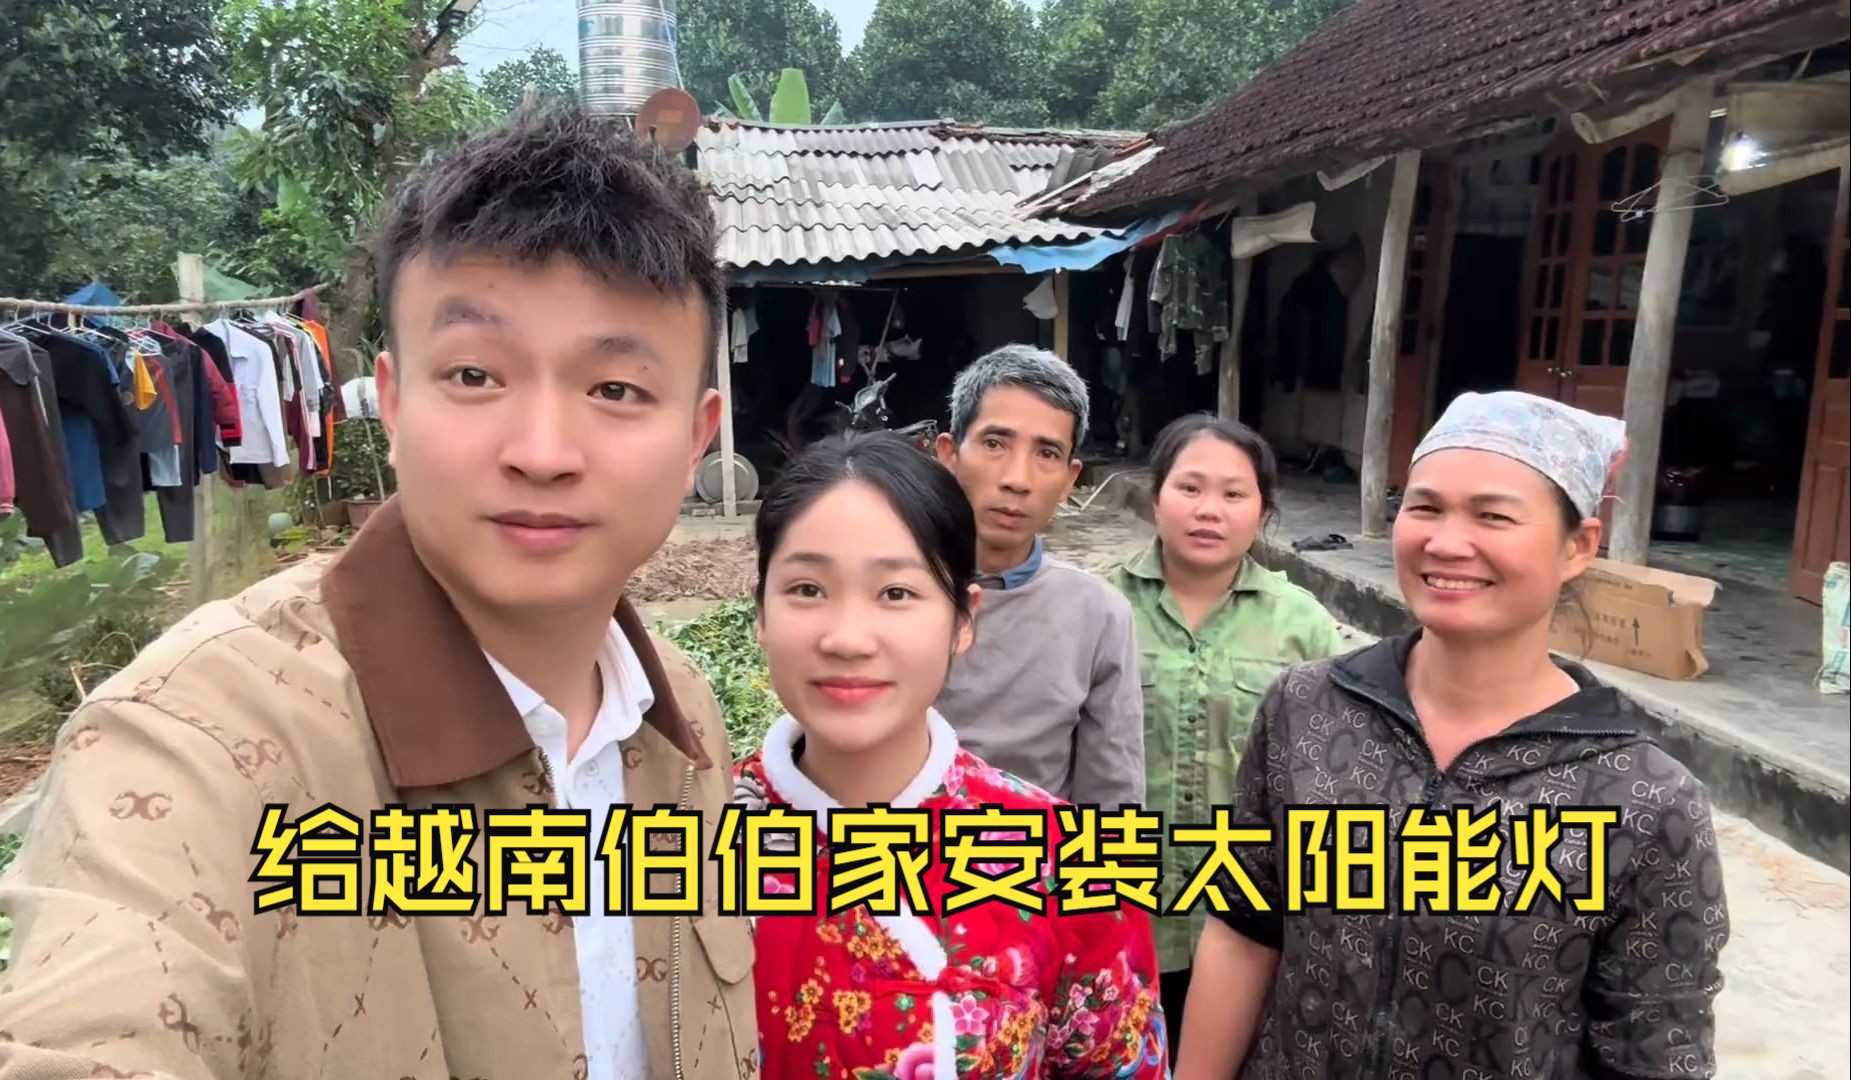 给越南老丈人家装了中国制造太阳能灯兄弟也想要，中国女婿安排上